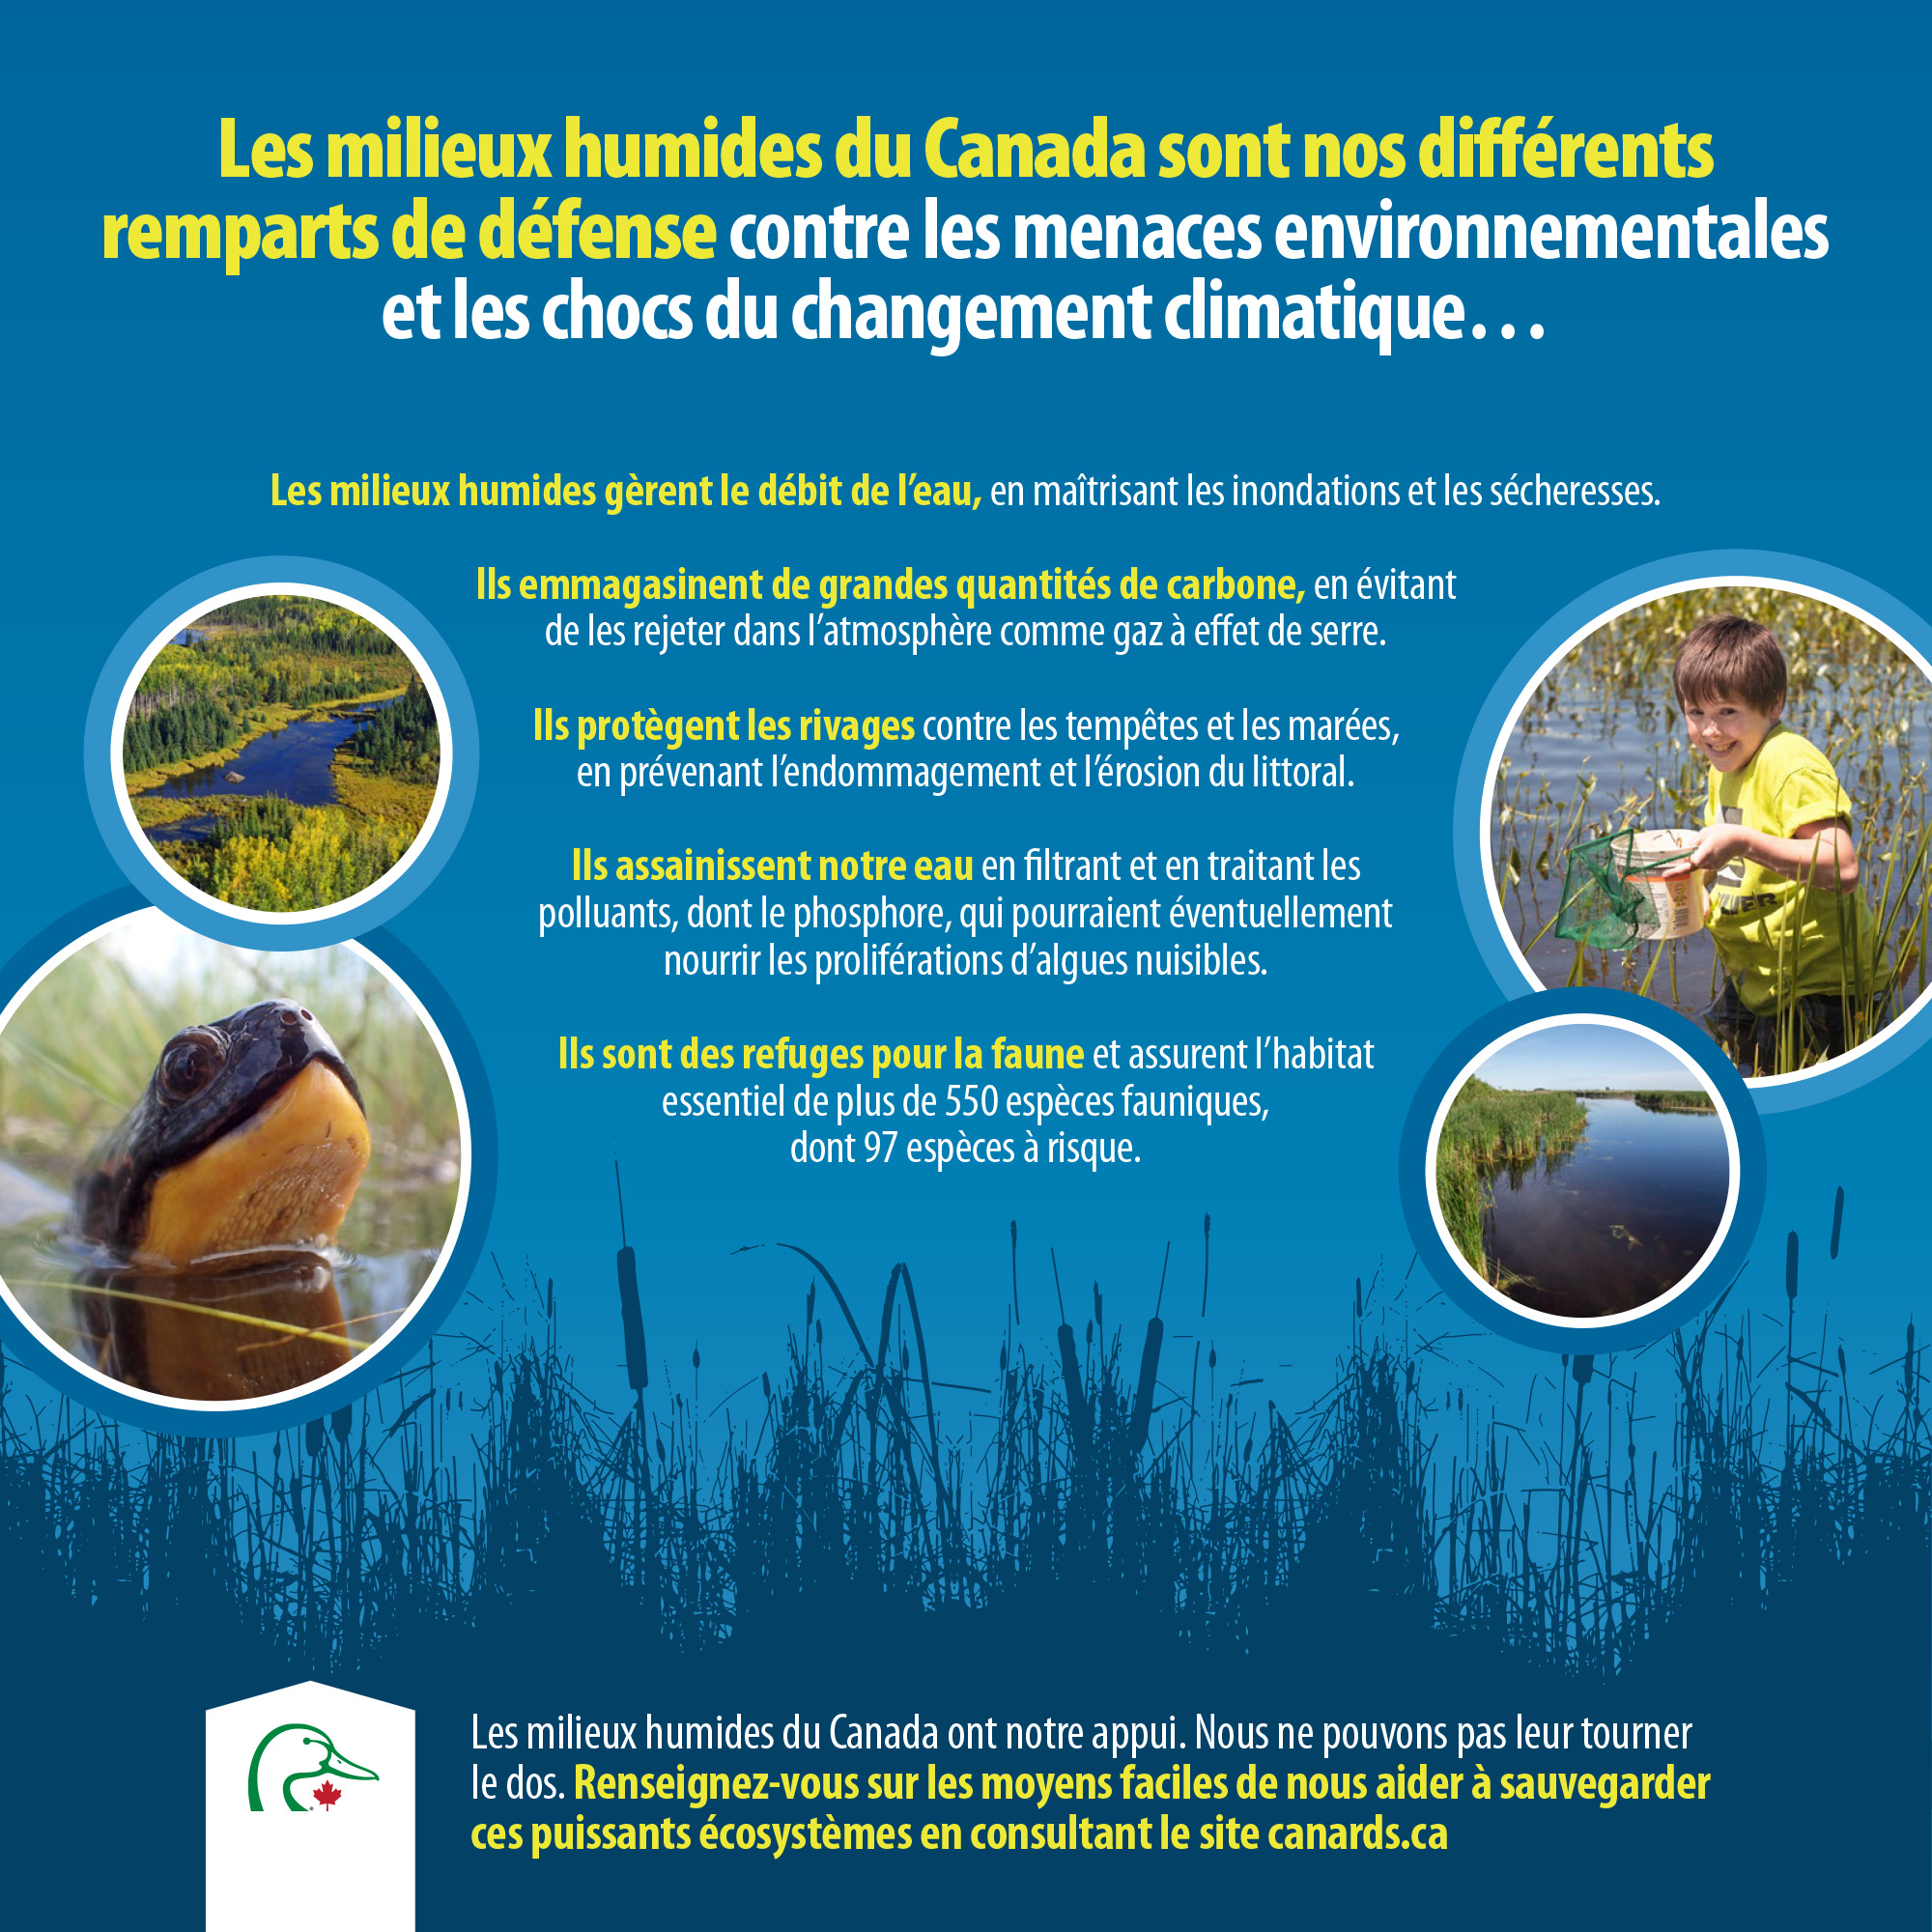 Les milieux humides du Canada sont nos différents remparts de défense contre les menaces environnementales et les chocs du changement climatique…